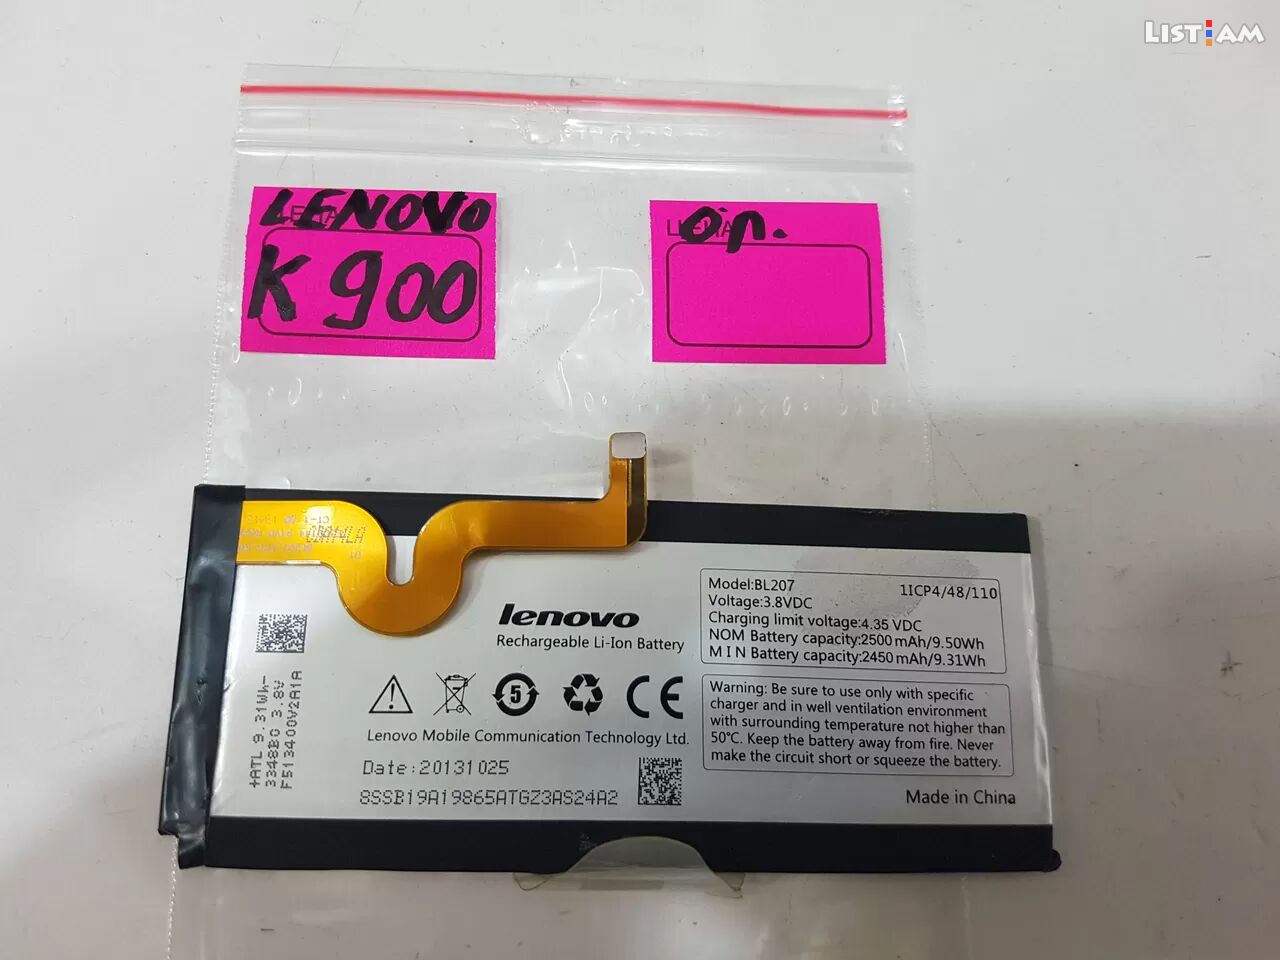 Lenovo k900